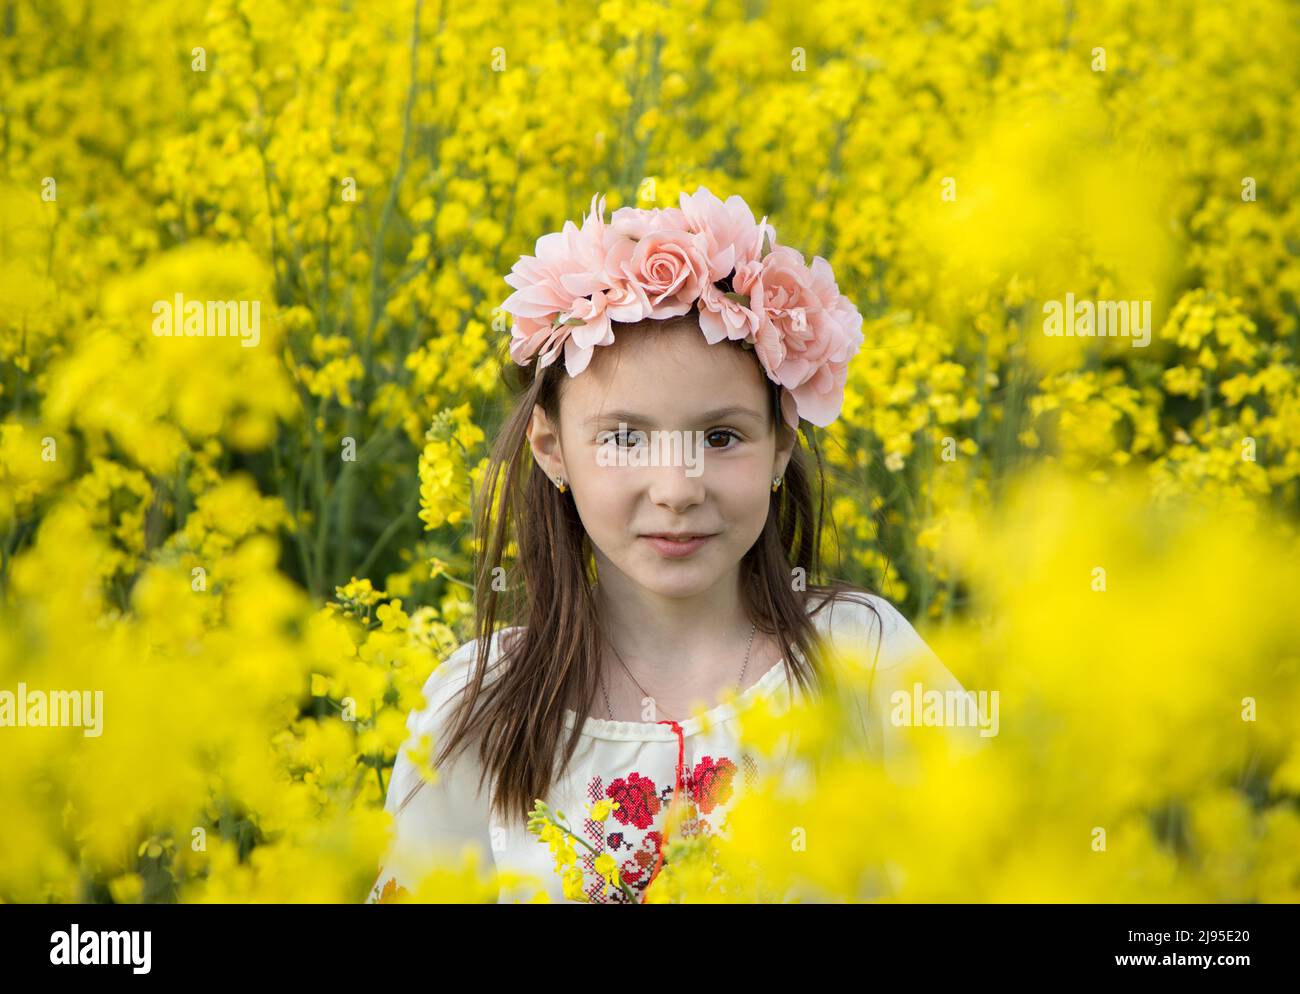 Gesicht Porträt eines niedlichen Mädchen 7 Jahre alt in einem Kranz und eine traditionelle bestickte Bluse zwischen einem gelb blühenden Rapsfeld. Kinder für den Frieden. Stockfoto